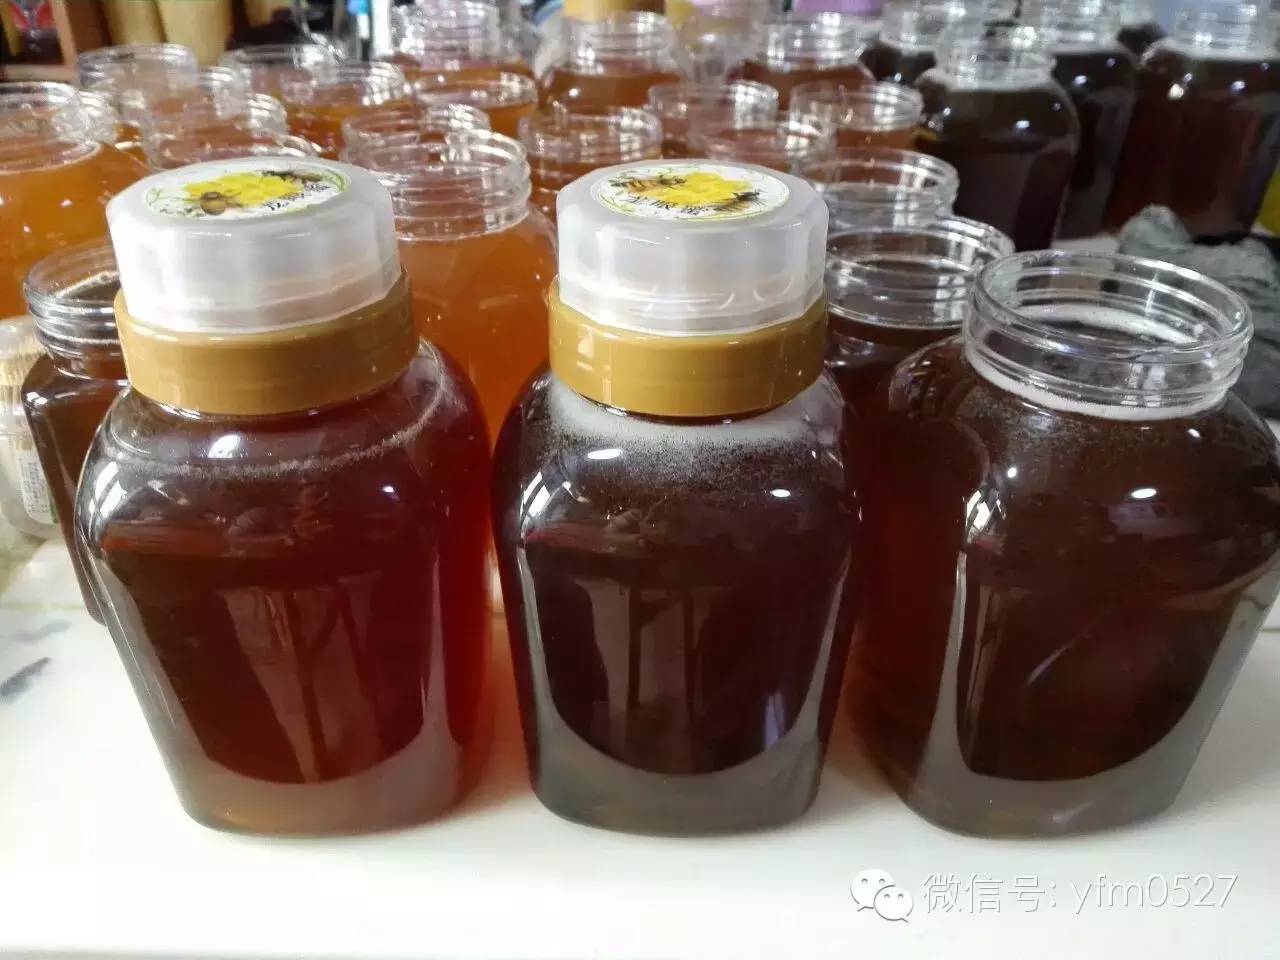 网上蜂蜜 百花牌蜂蜜价格 蜂蜜面膜的作用 黄瓜蜂蜜面膜 蜂蜜加盟连锁店